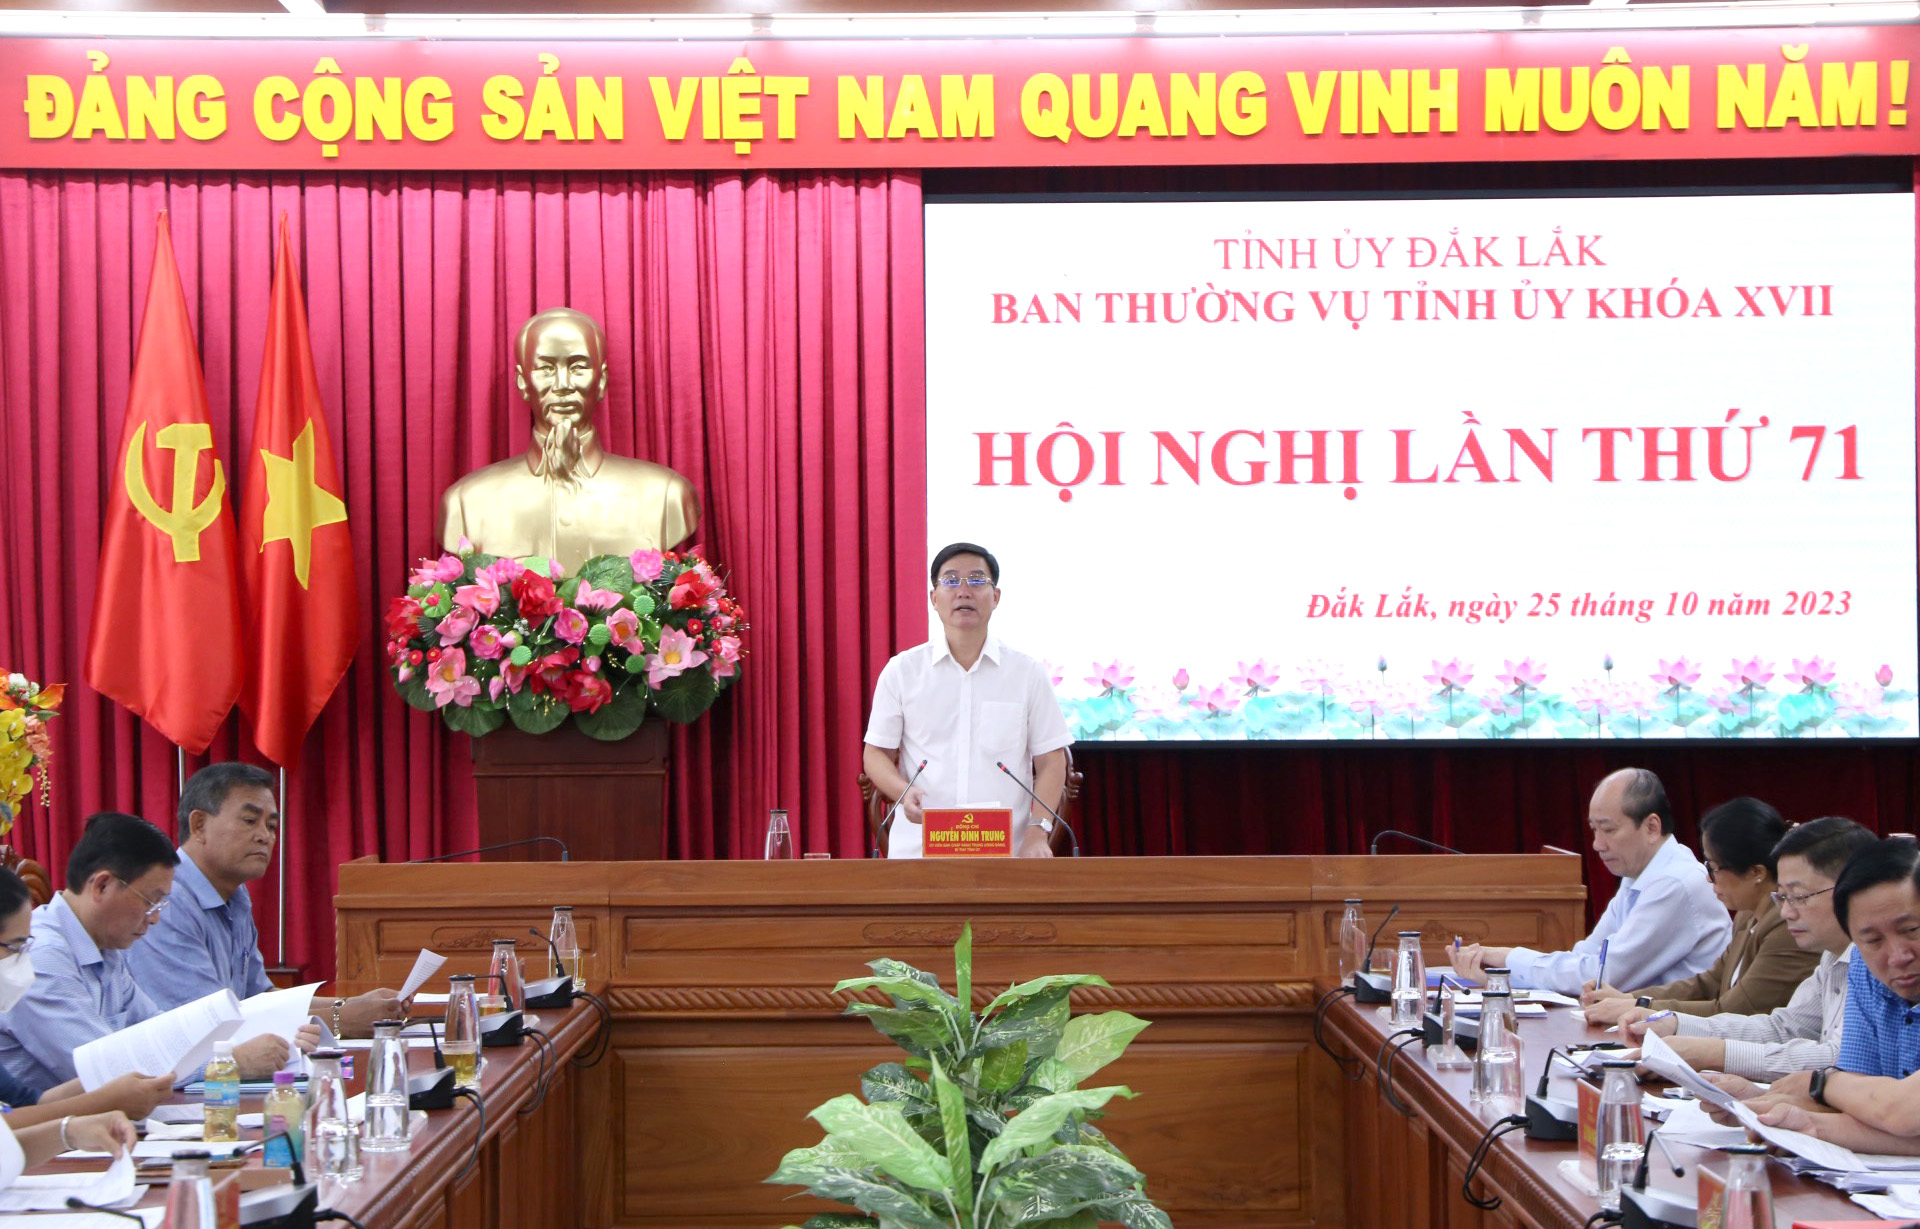 Đồng chí Nguyễn Đình Trung - Ủy viên Trung ương Đảng, Bí thư Tỉnh ủy Đắk Lắk phát biểu tại Hội nghị Ban Thường vụ Tỉnh ủy lần thứ 70.